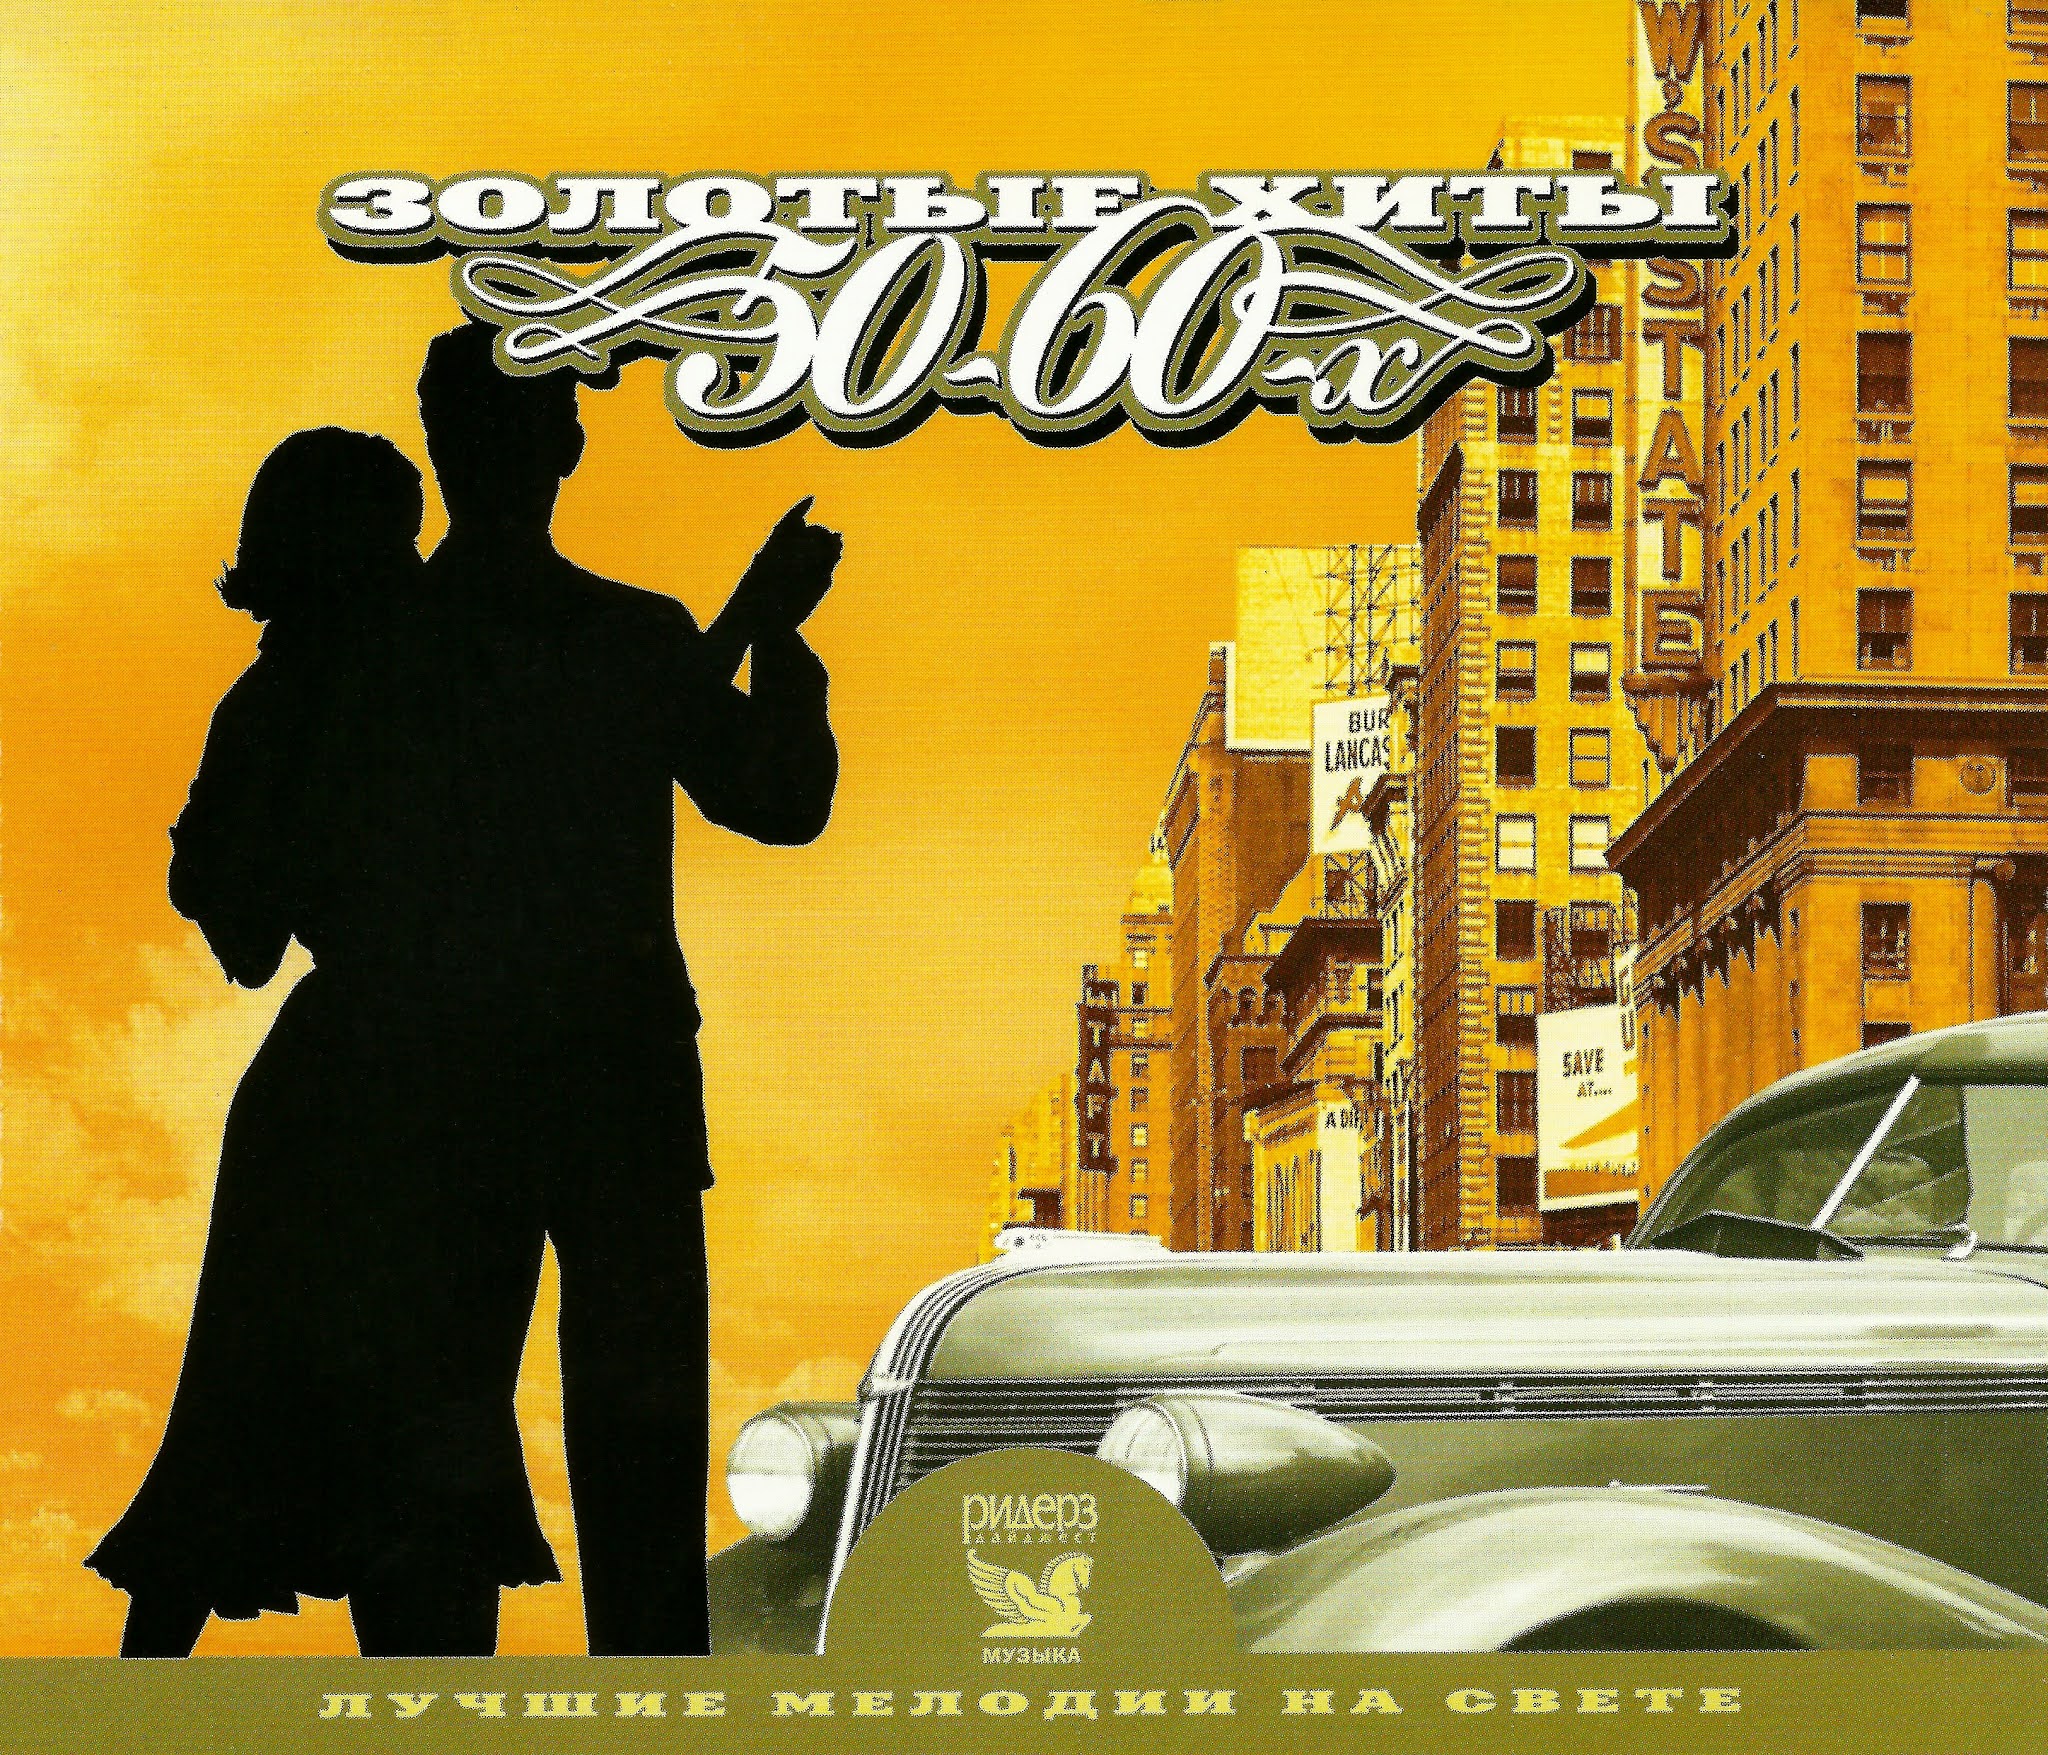 Популярная музыка 60. Постер 999 "музыка" 40х28 см. CD золотые хиты 50-60-х. Обложки альбомов шестидесятых. Золотое ретро 50-60 годов cd2 (2005).